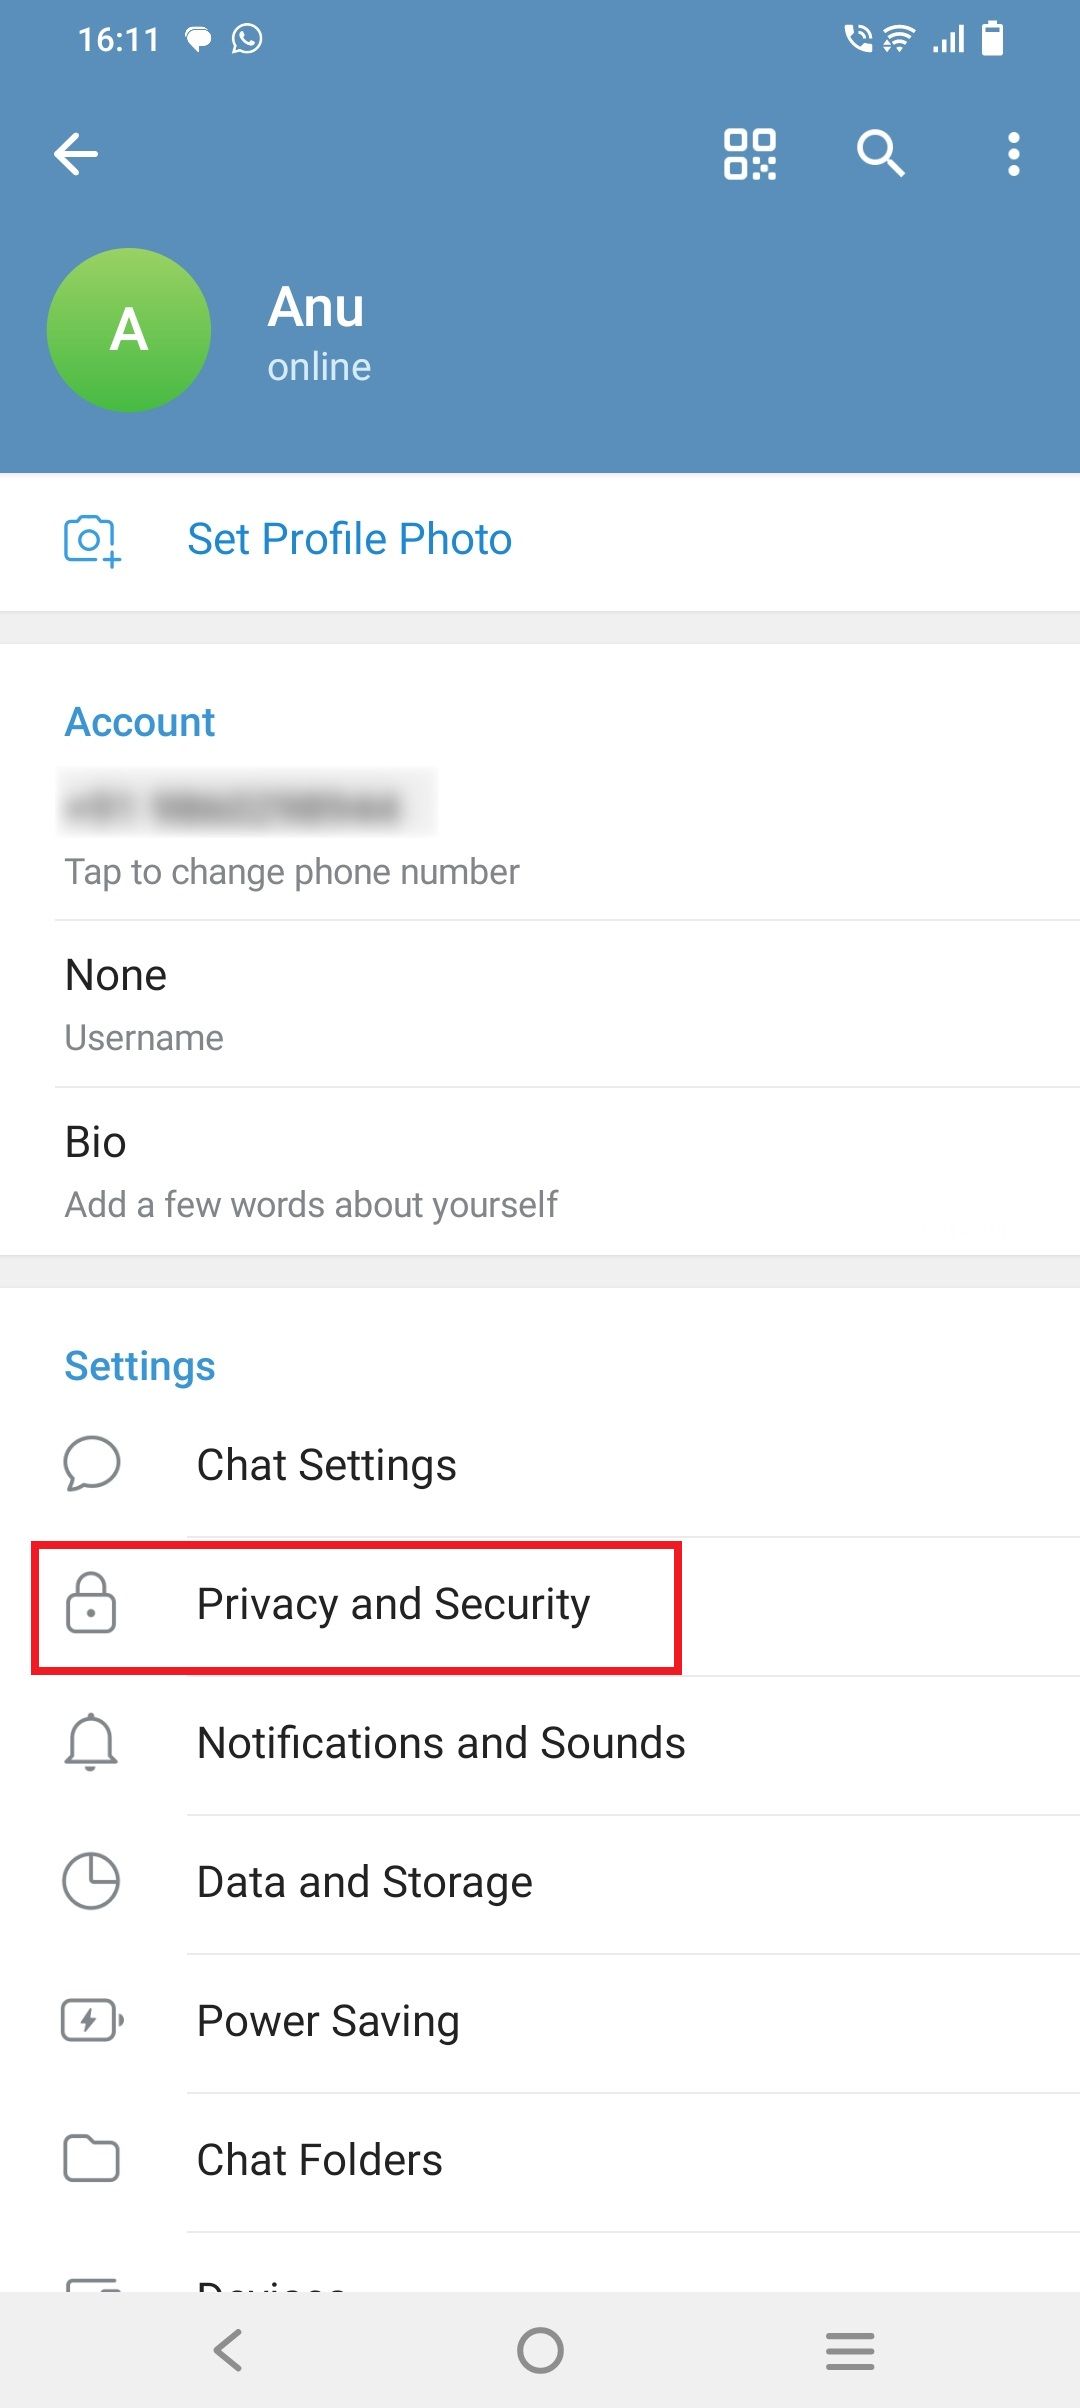 Captura de tela do menu Configurações do Telegram, destacando a opção Privacidade e Segurança.